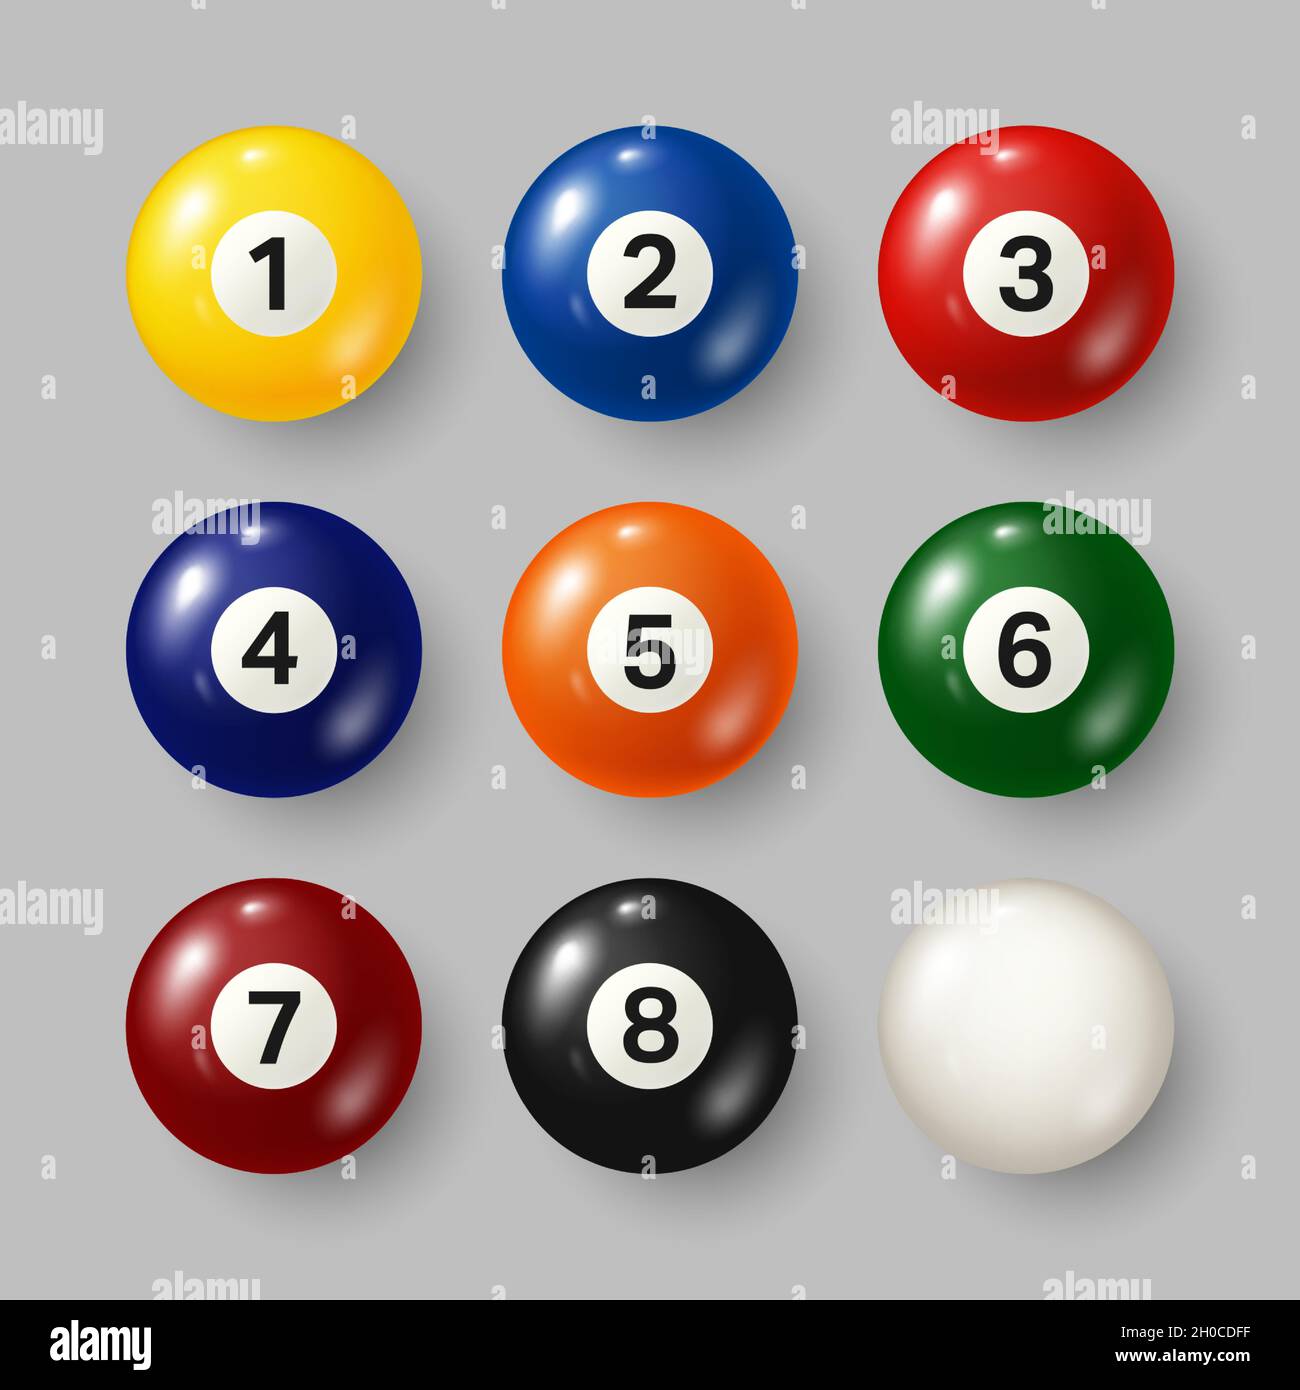 Farbenfrohe Billard, Billardkugeln mit Zahlen auf grauem Hintergrund.  Realistischer, glänzender Snooker-Ball. Vektorgrafik Stock-Vektorgrafik -  Alamy